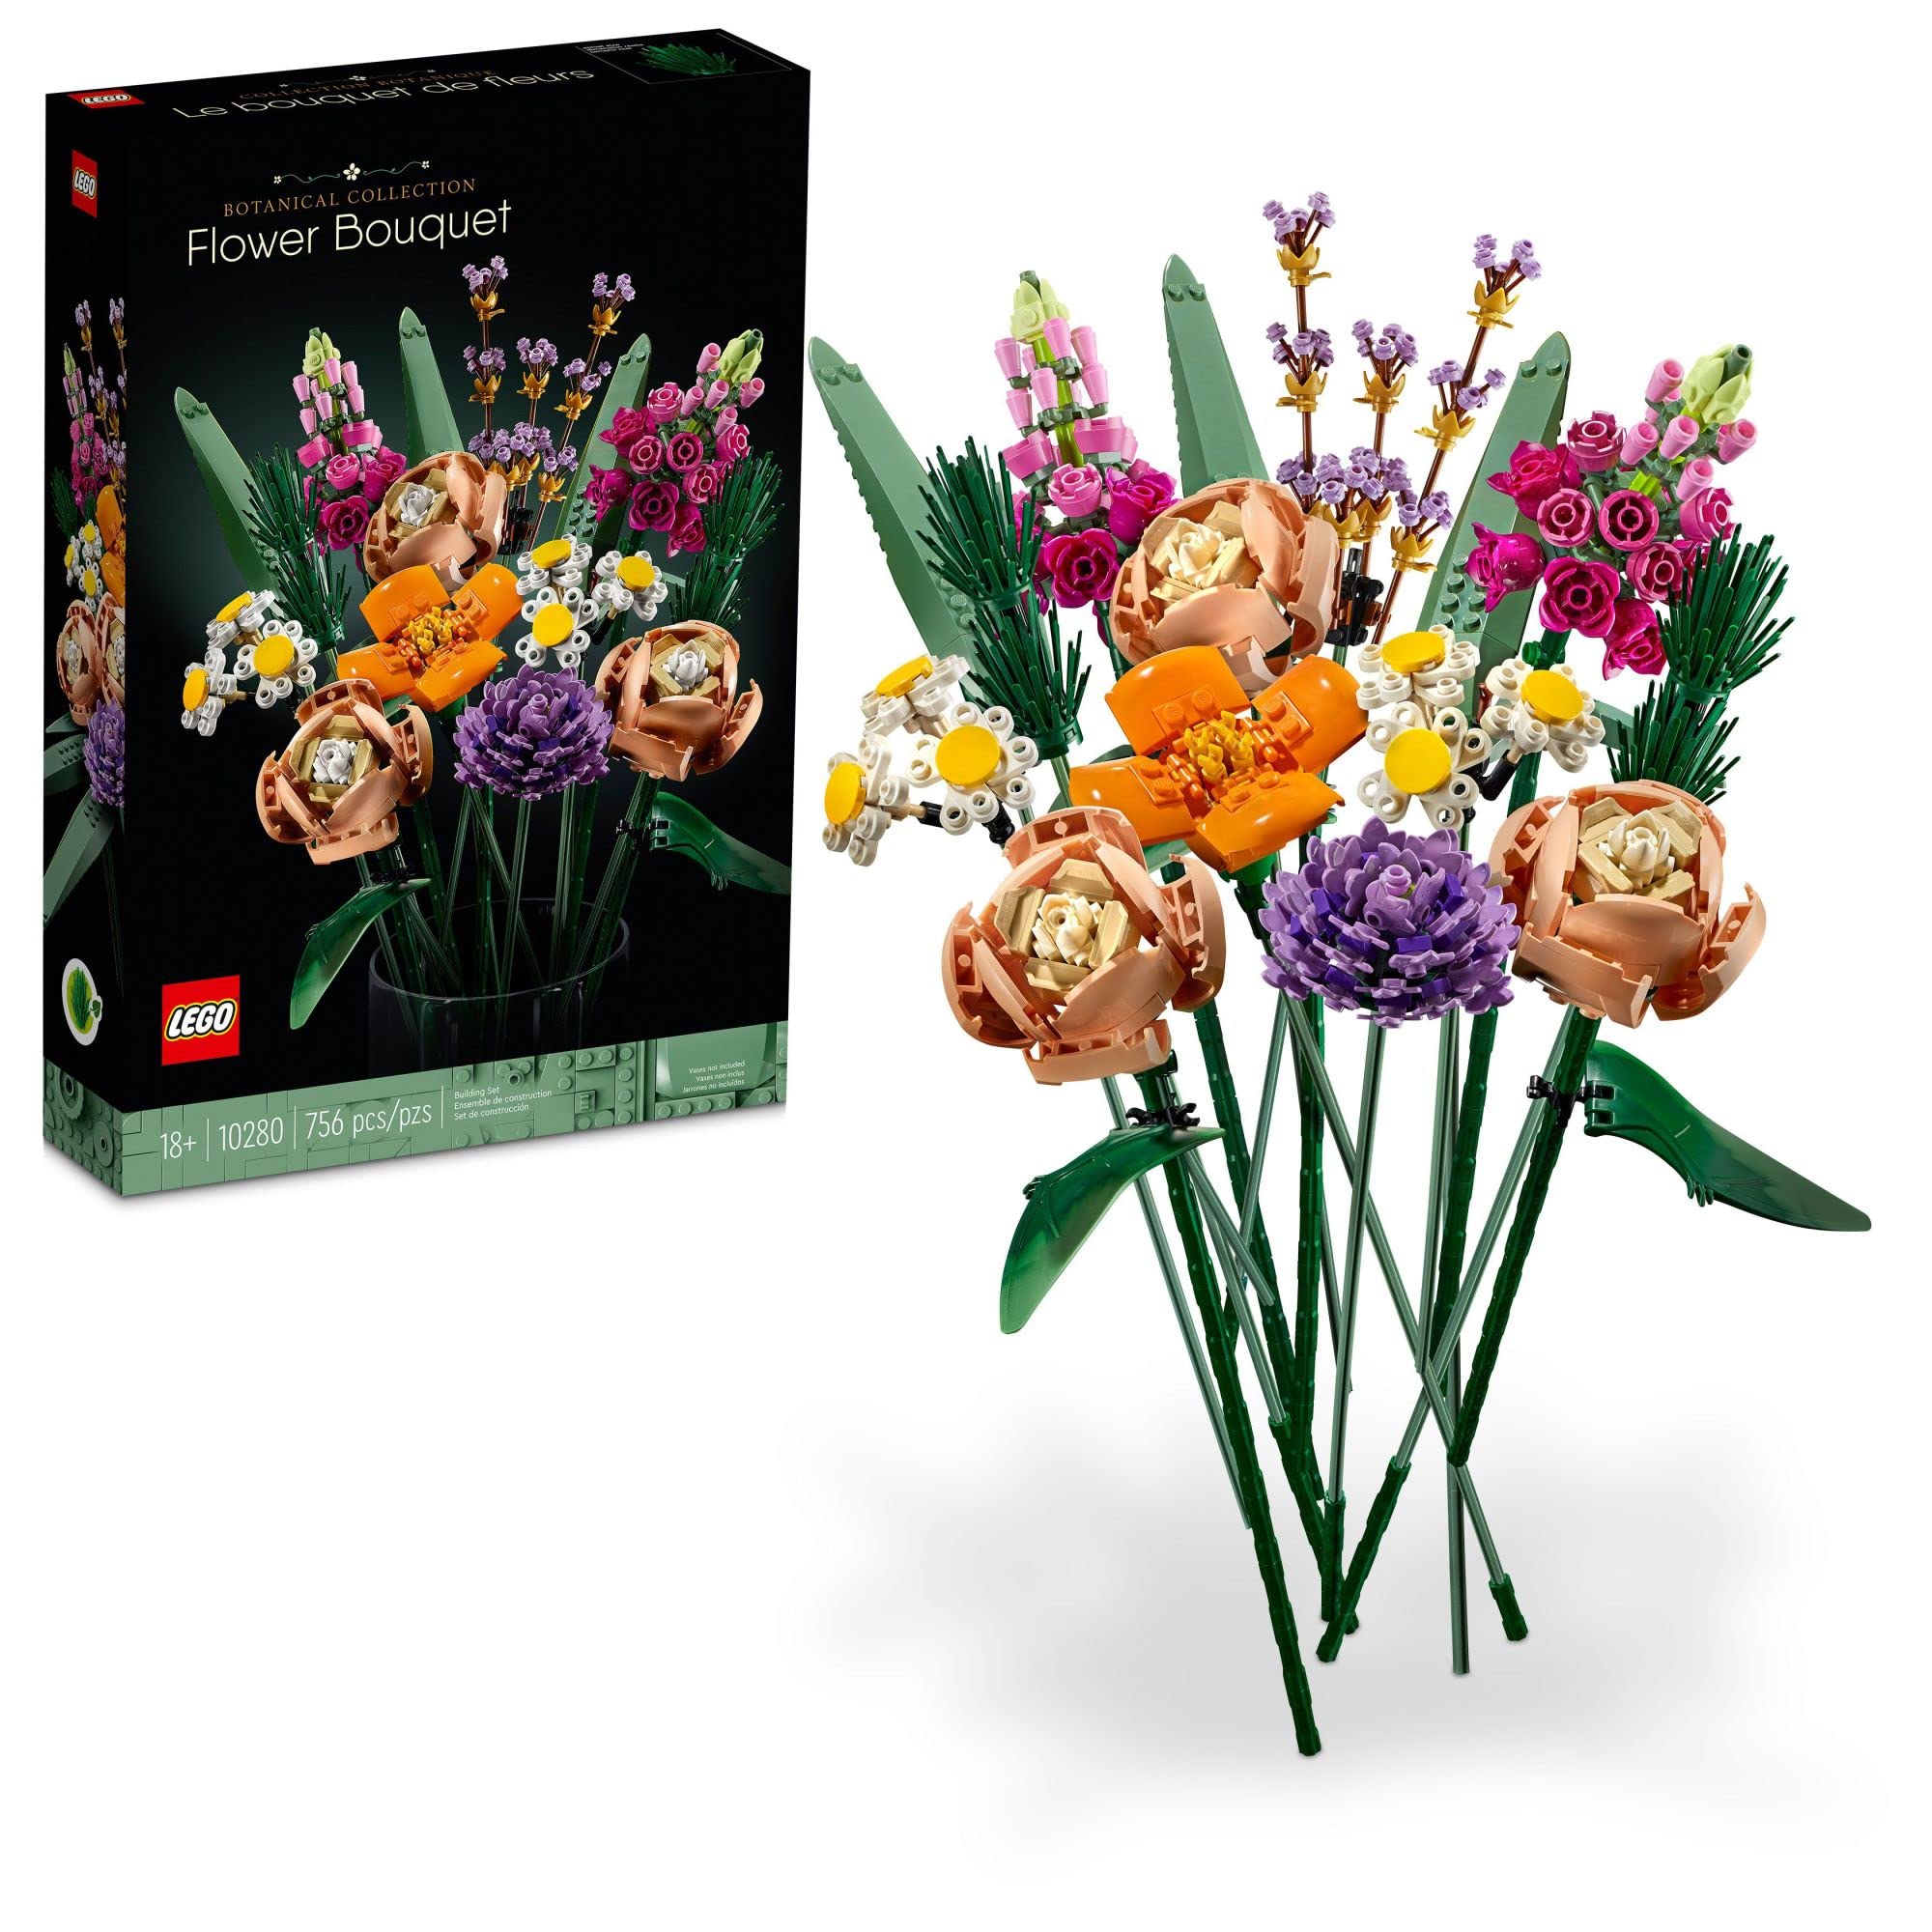 grand choix LEGO - Flower Bouquet - 10280 - 2021 - Kit de Construction - Un Bouquet de Fleurs Unique et Un Projet créatif pour Adulte - 756 pièces J5yAZlJwT tout pour vous